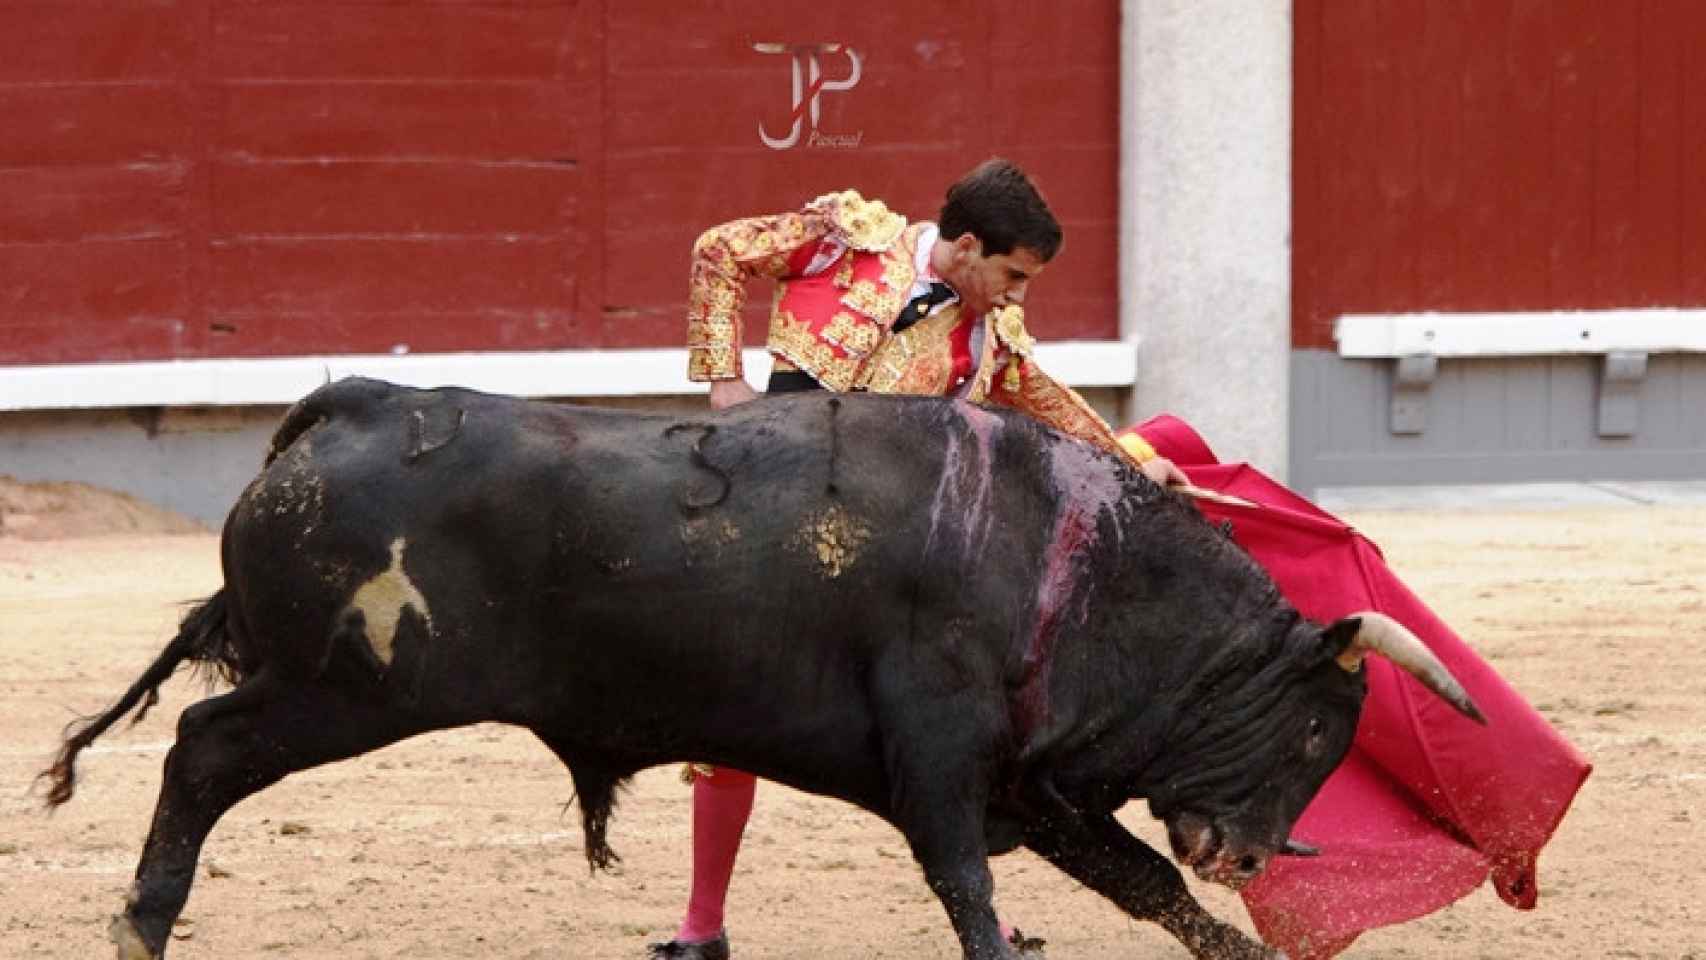 Las mejores imágenes de una tarde de toros en Las Ventas